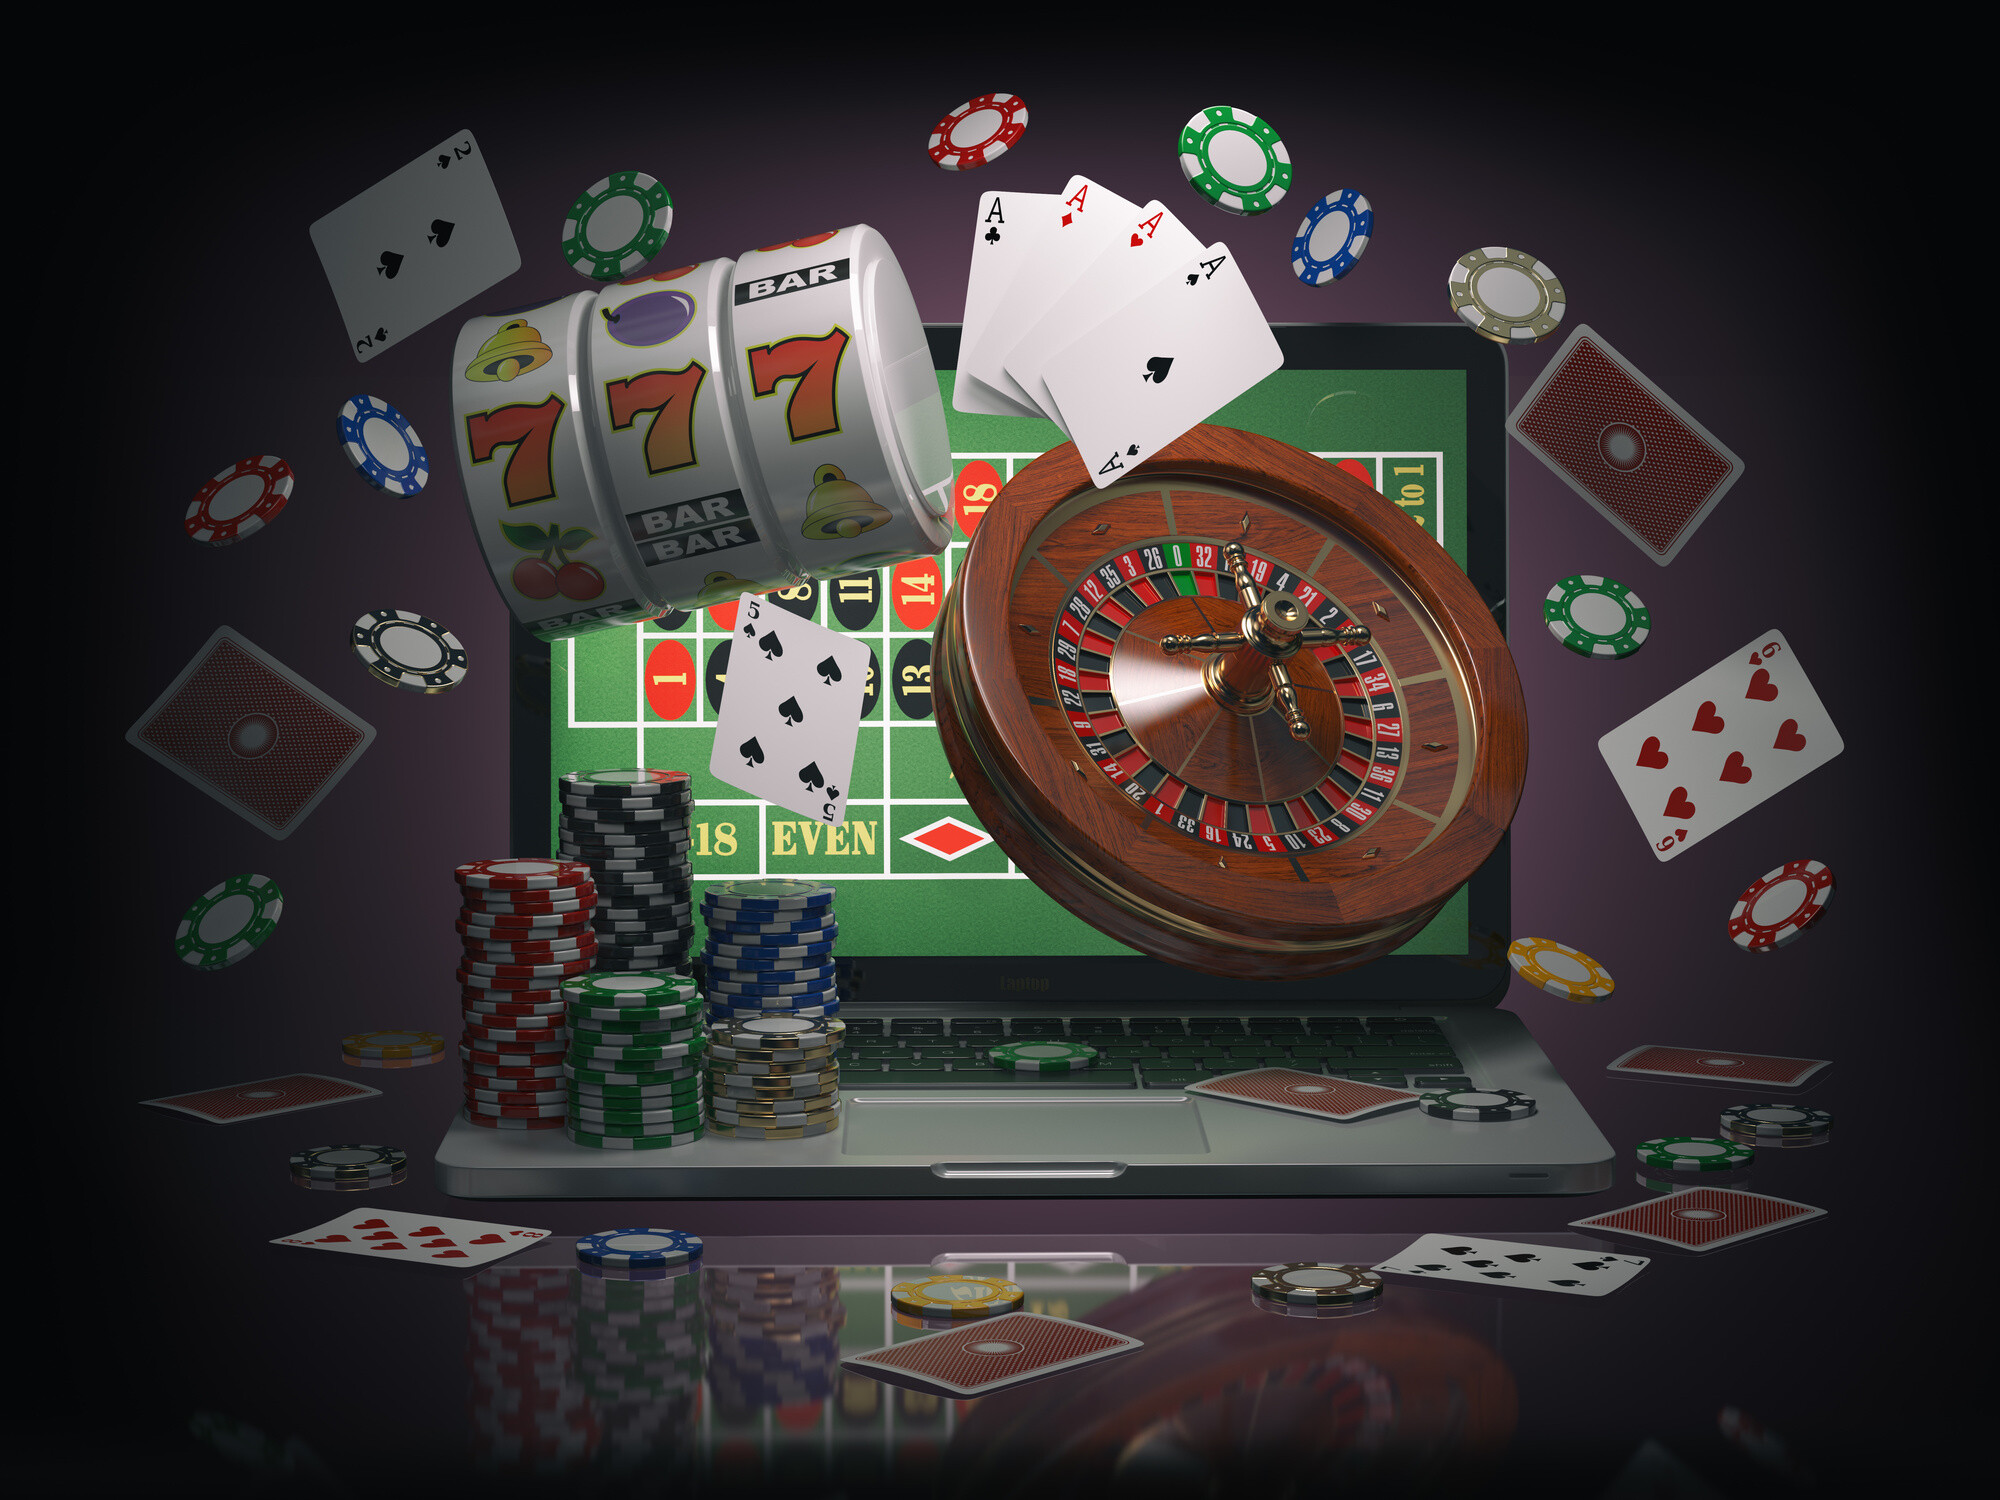 casino online para cekme islemleri